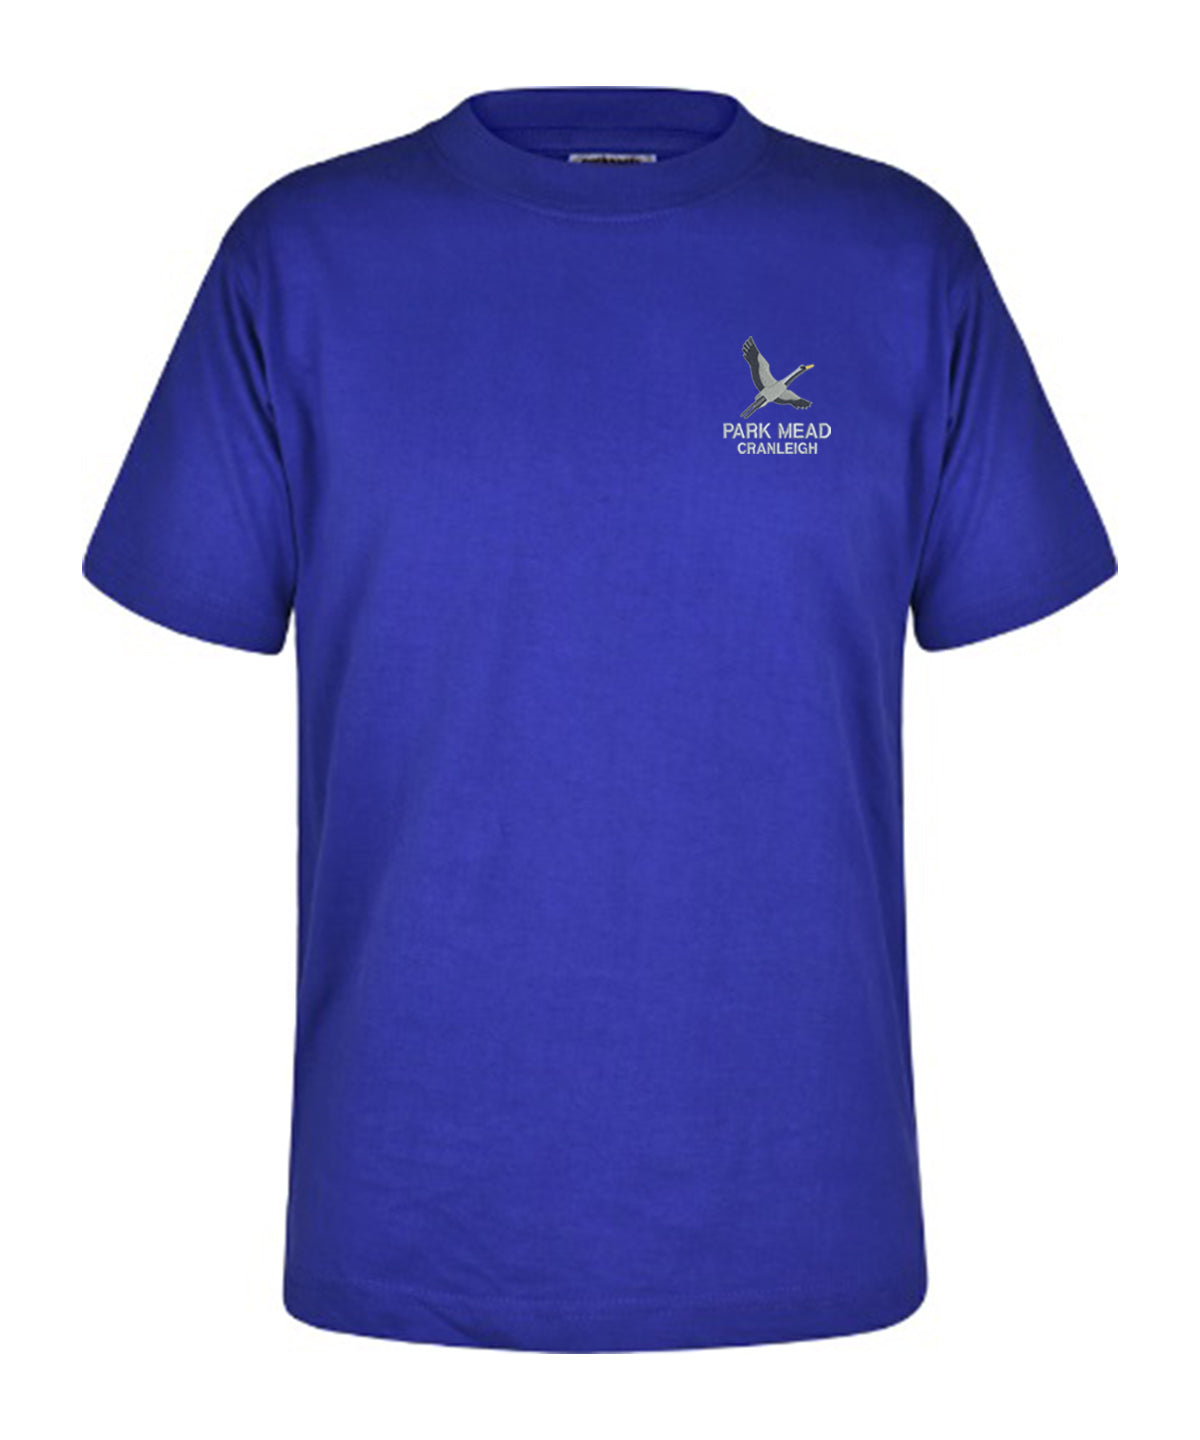 Park Mead Primary School - Unisex Cotton T Shirt - Royal Blue